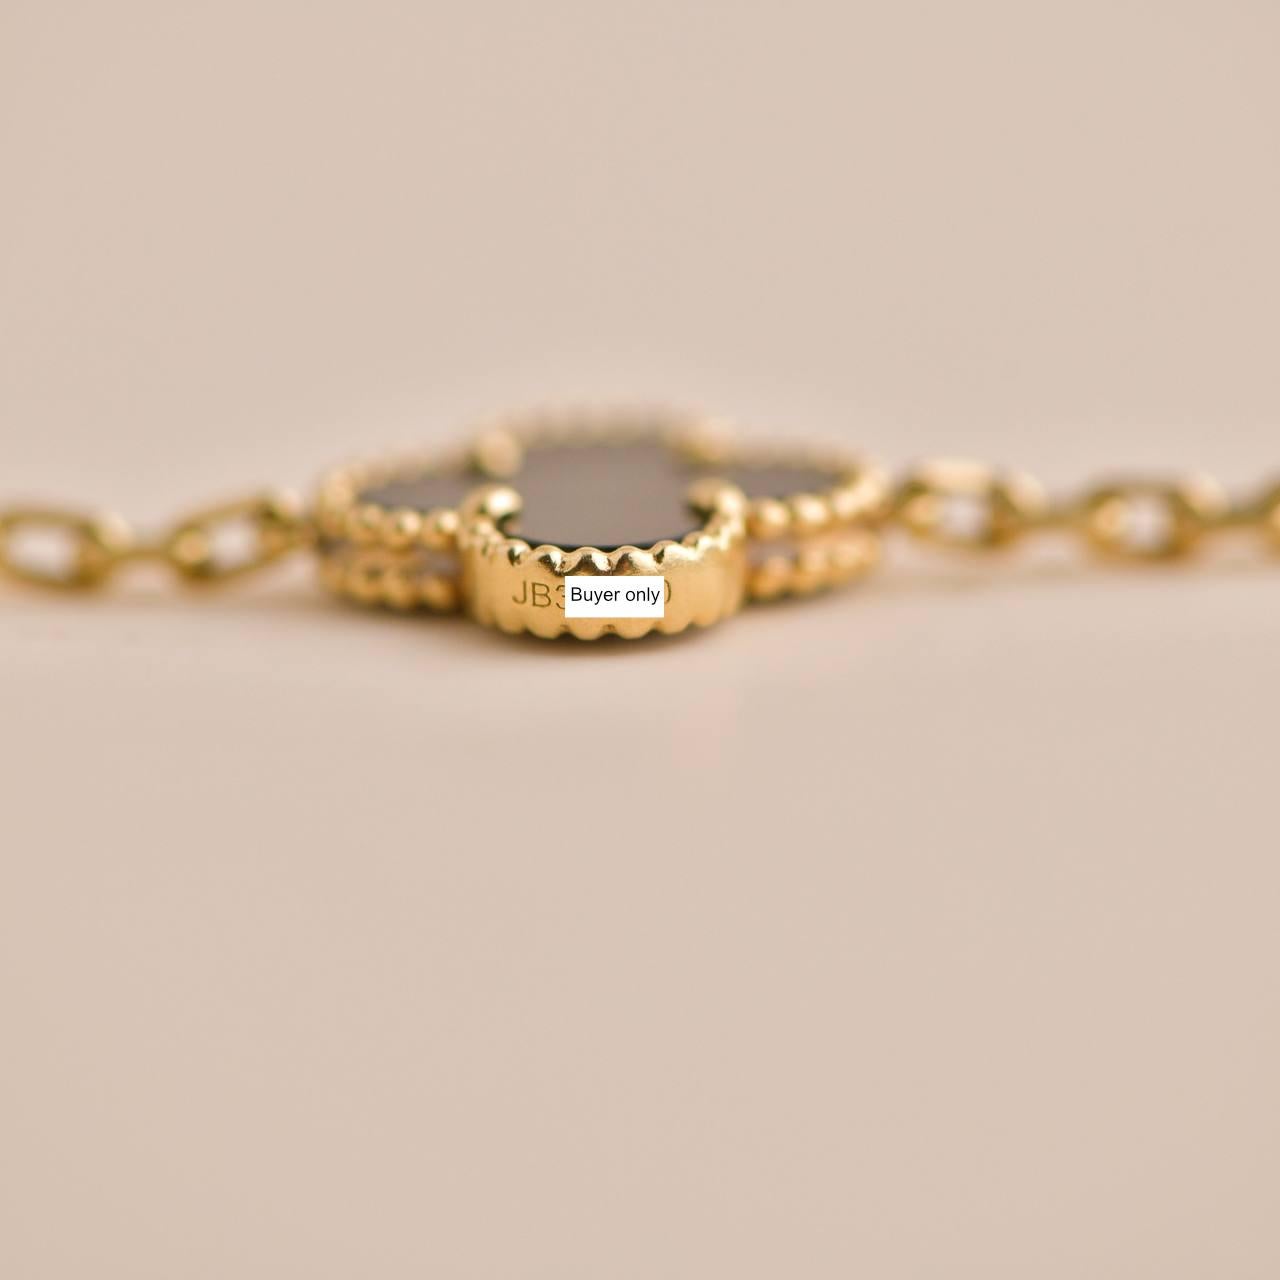 Uncut Van Cleef & Arpels Black Onyx Vintage Alhambra Yellow Gold Bracelet